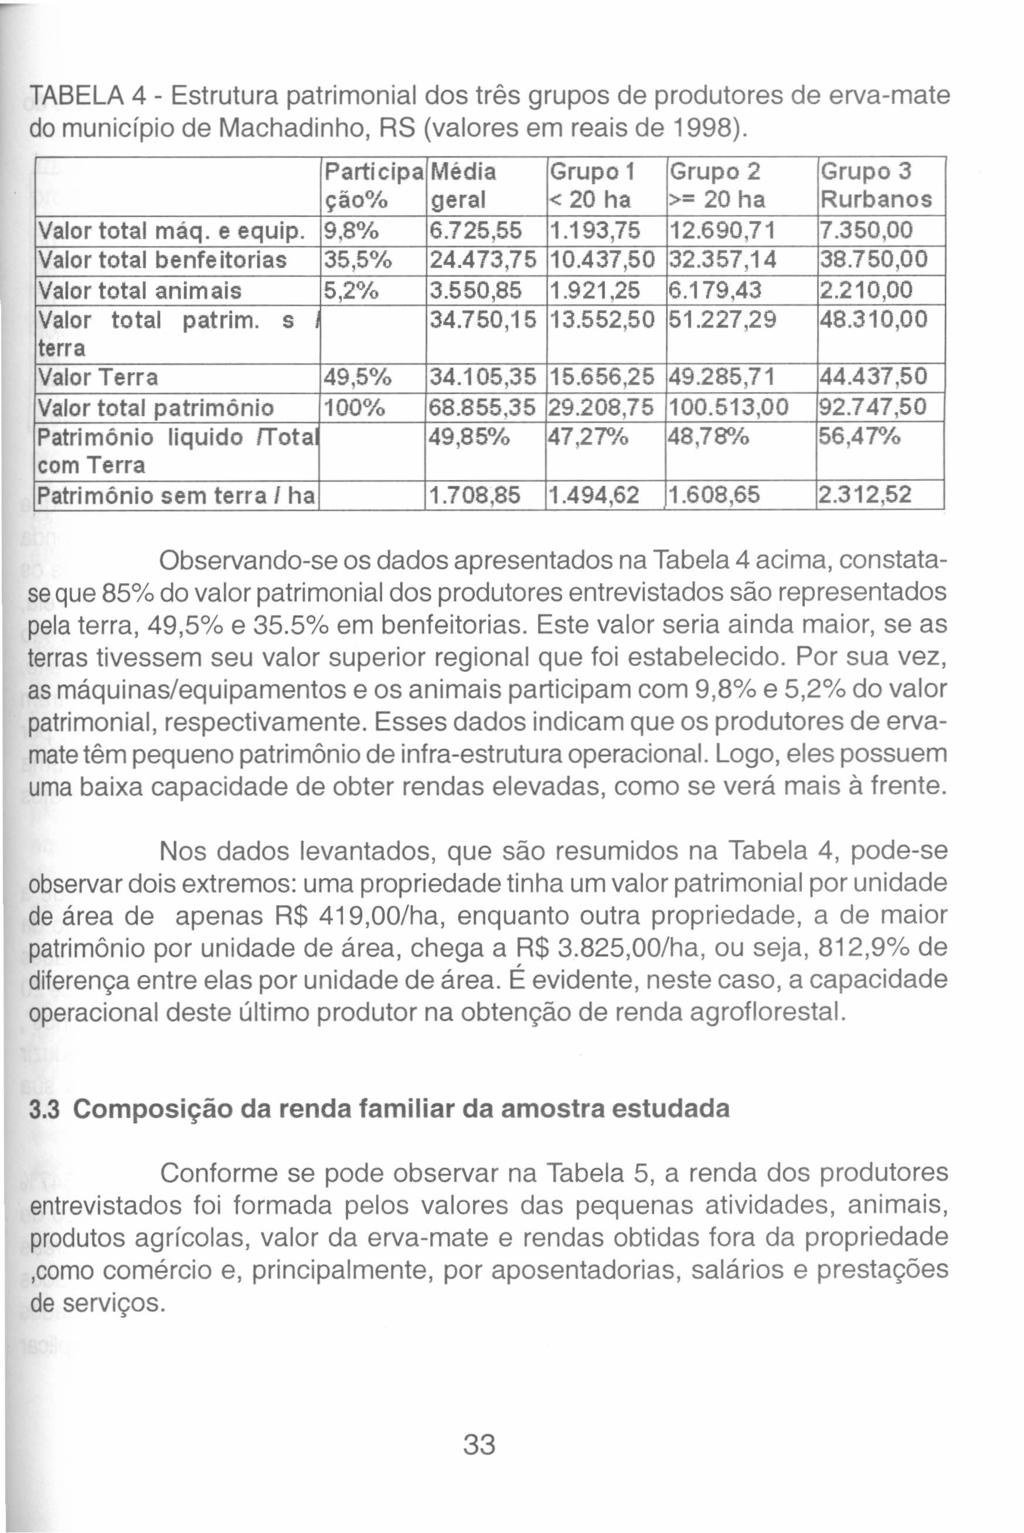 TABELA 4 - Estrutura patrimonial dos três grupos de produtores de erva-mate do município de Machadinho, RS (valores em reais de 1998).